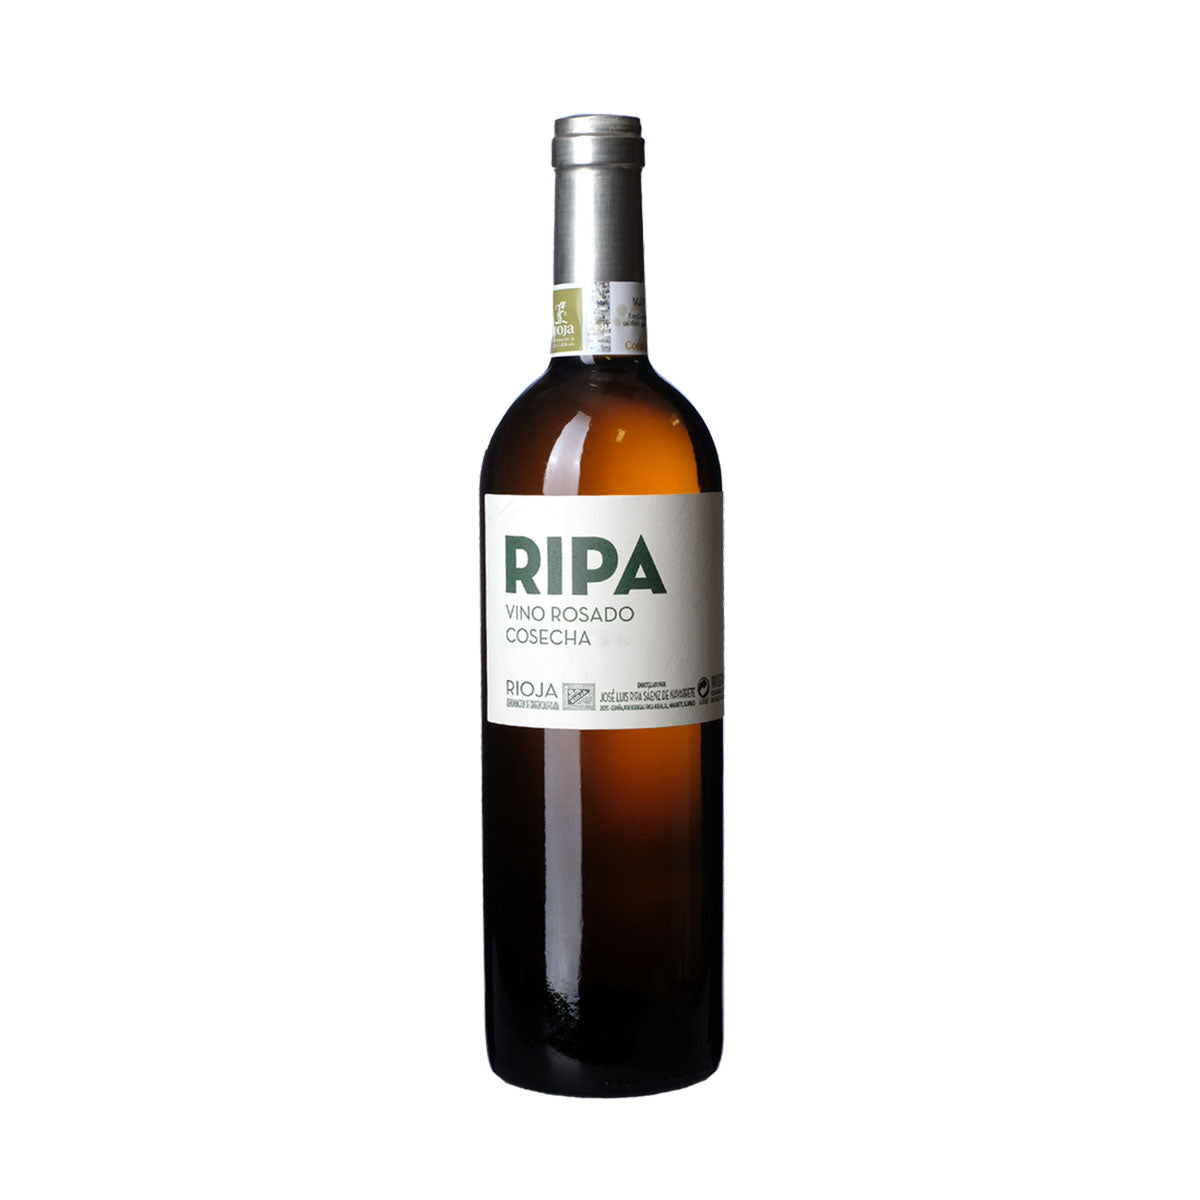 Ripa Rioja Rosado 2019